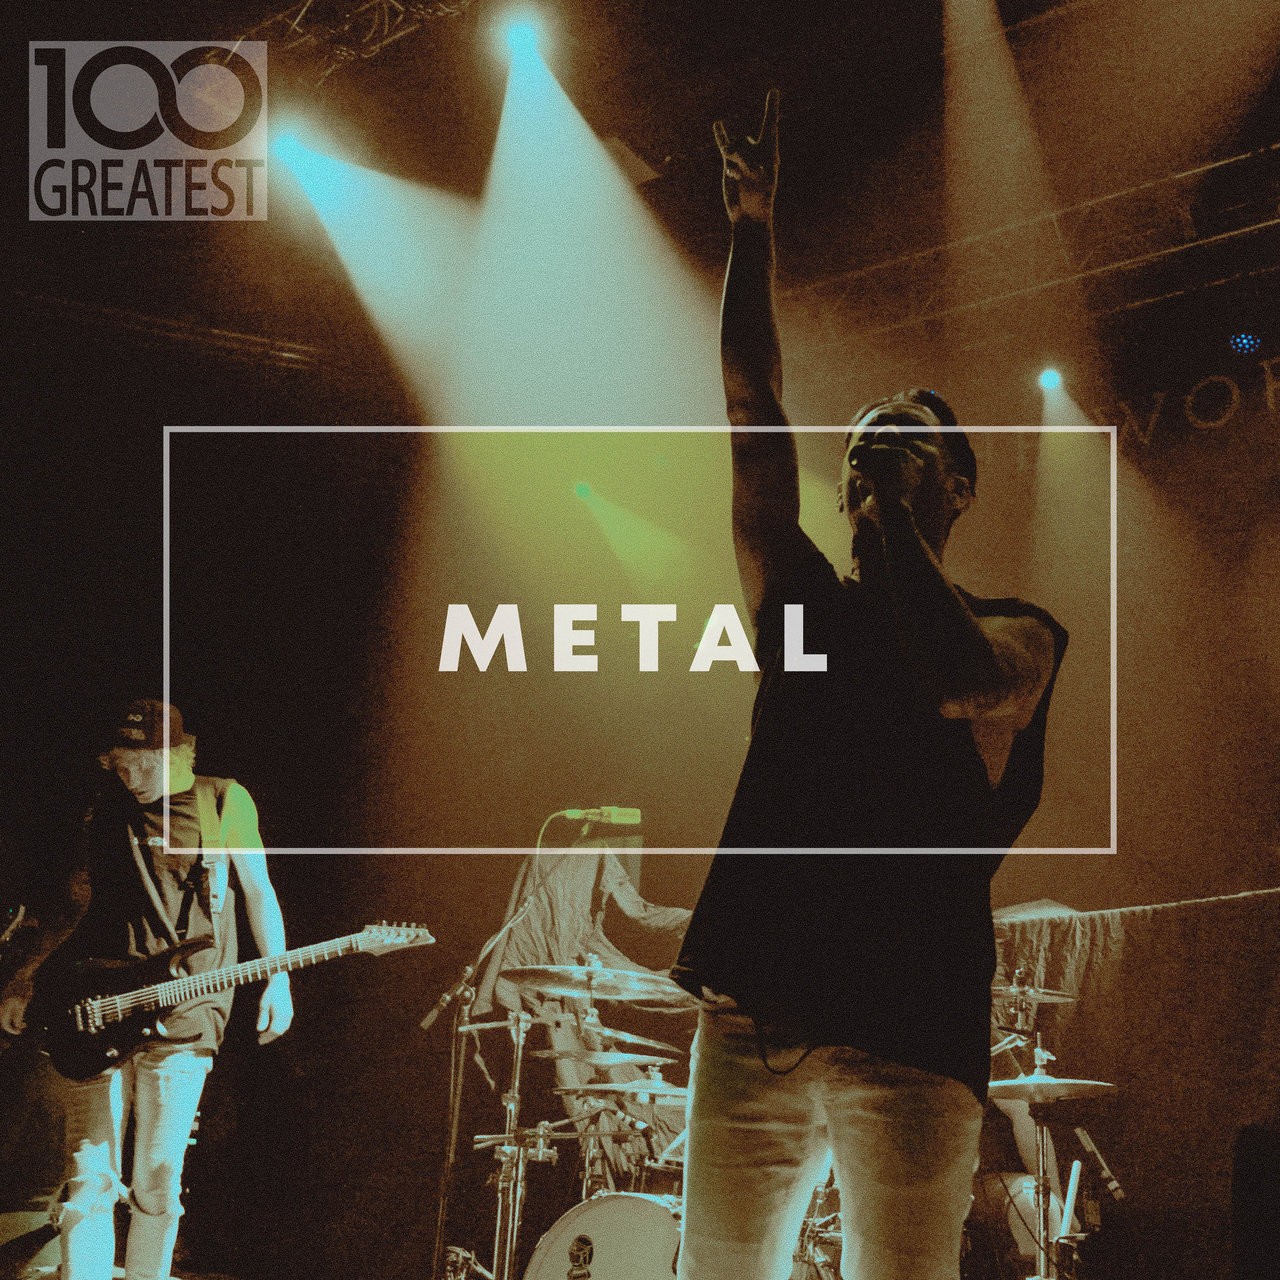 VA - 100 Greatest Metal - (2020) [16bit Flac]